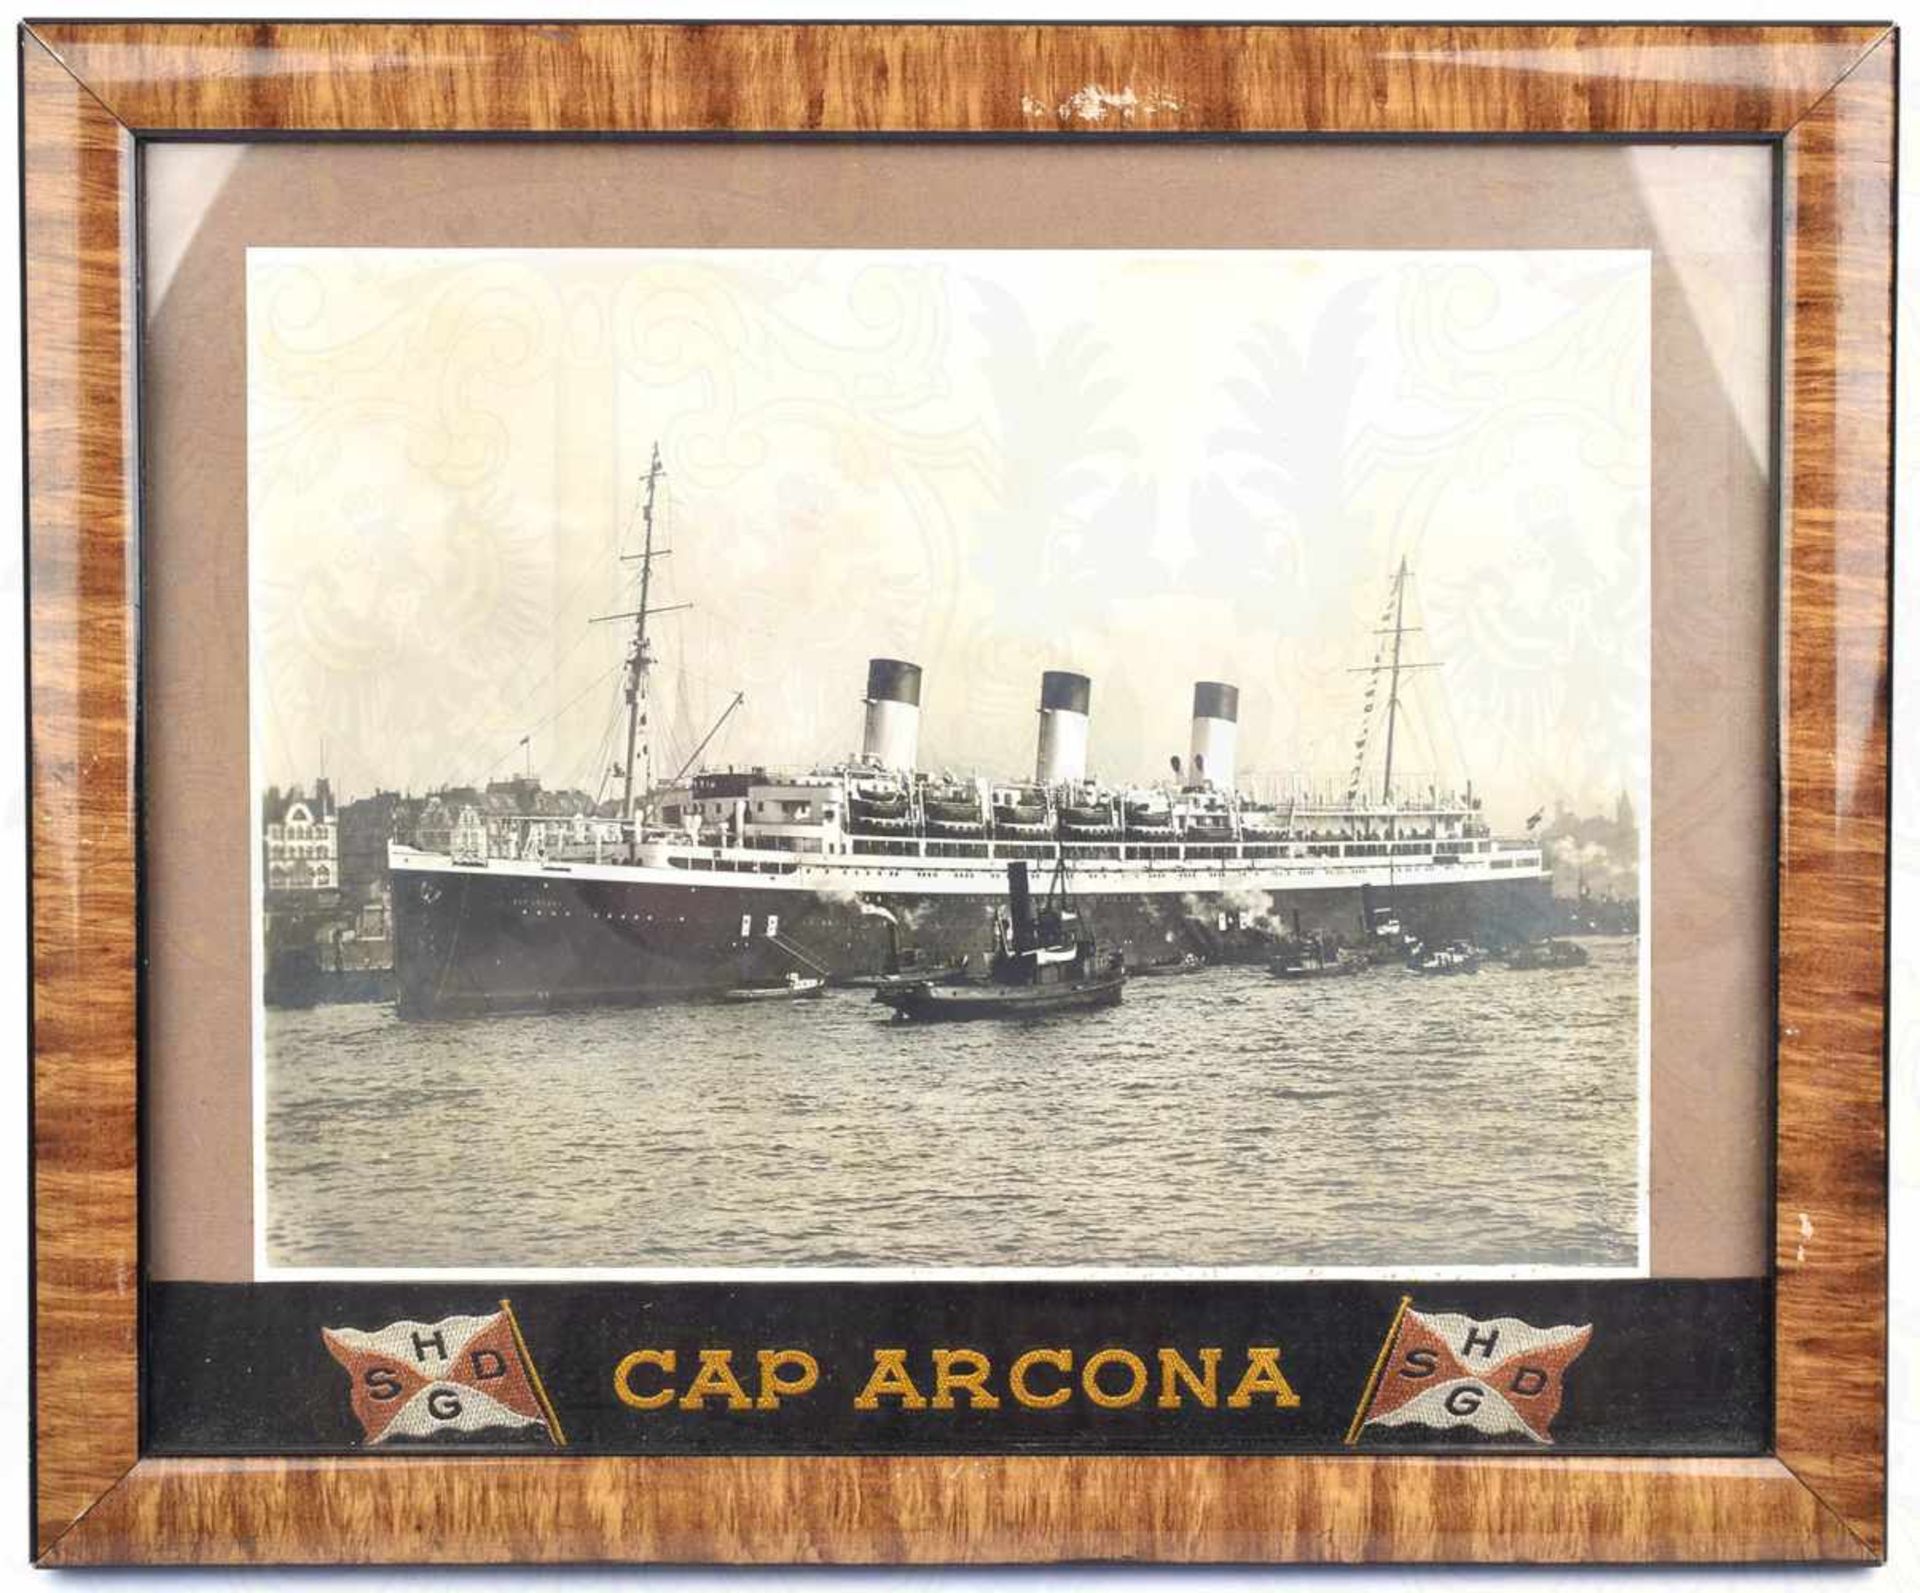 GROSSFOTO PASSAGIERSCHIFF CAP ARCONA, Aufnahme um 1935 im Hamburger Hafen, an der Bordwand u.